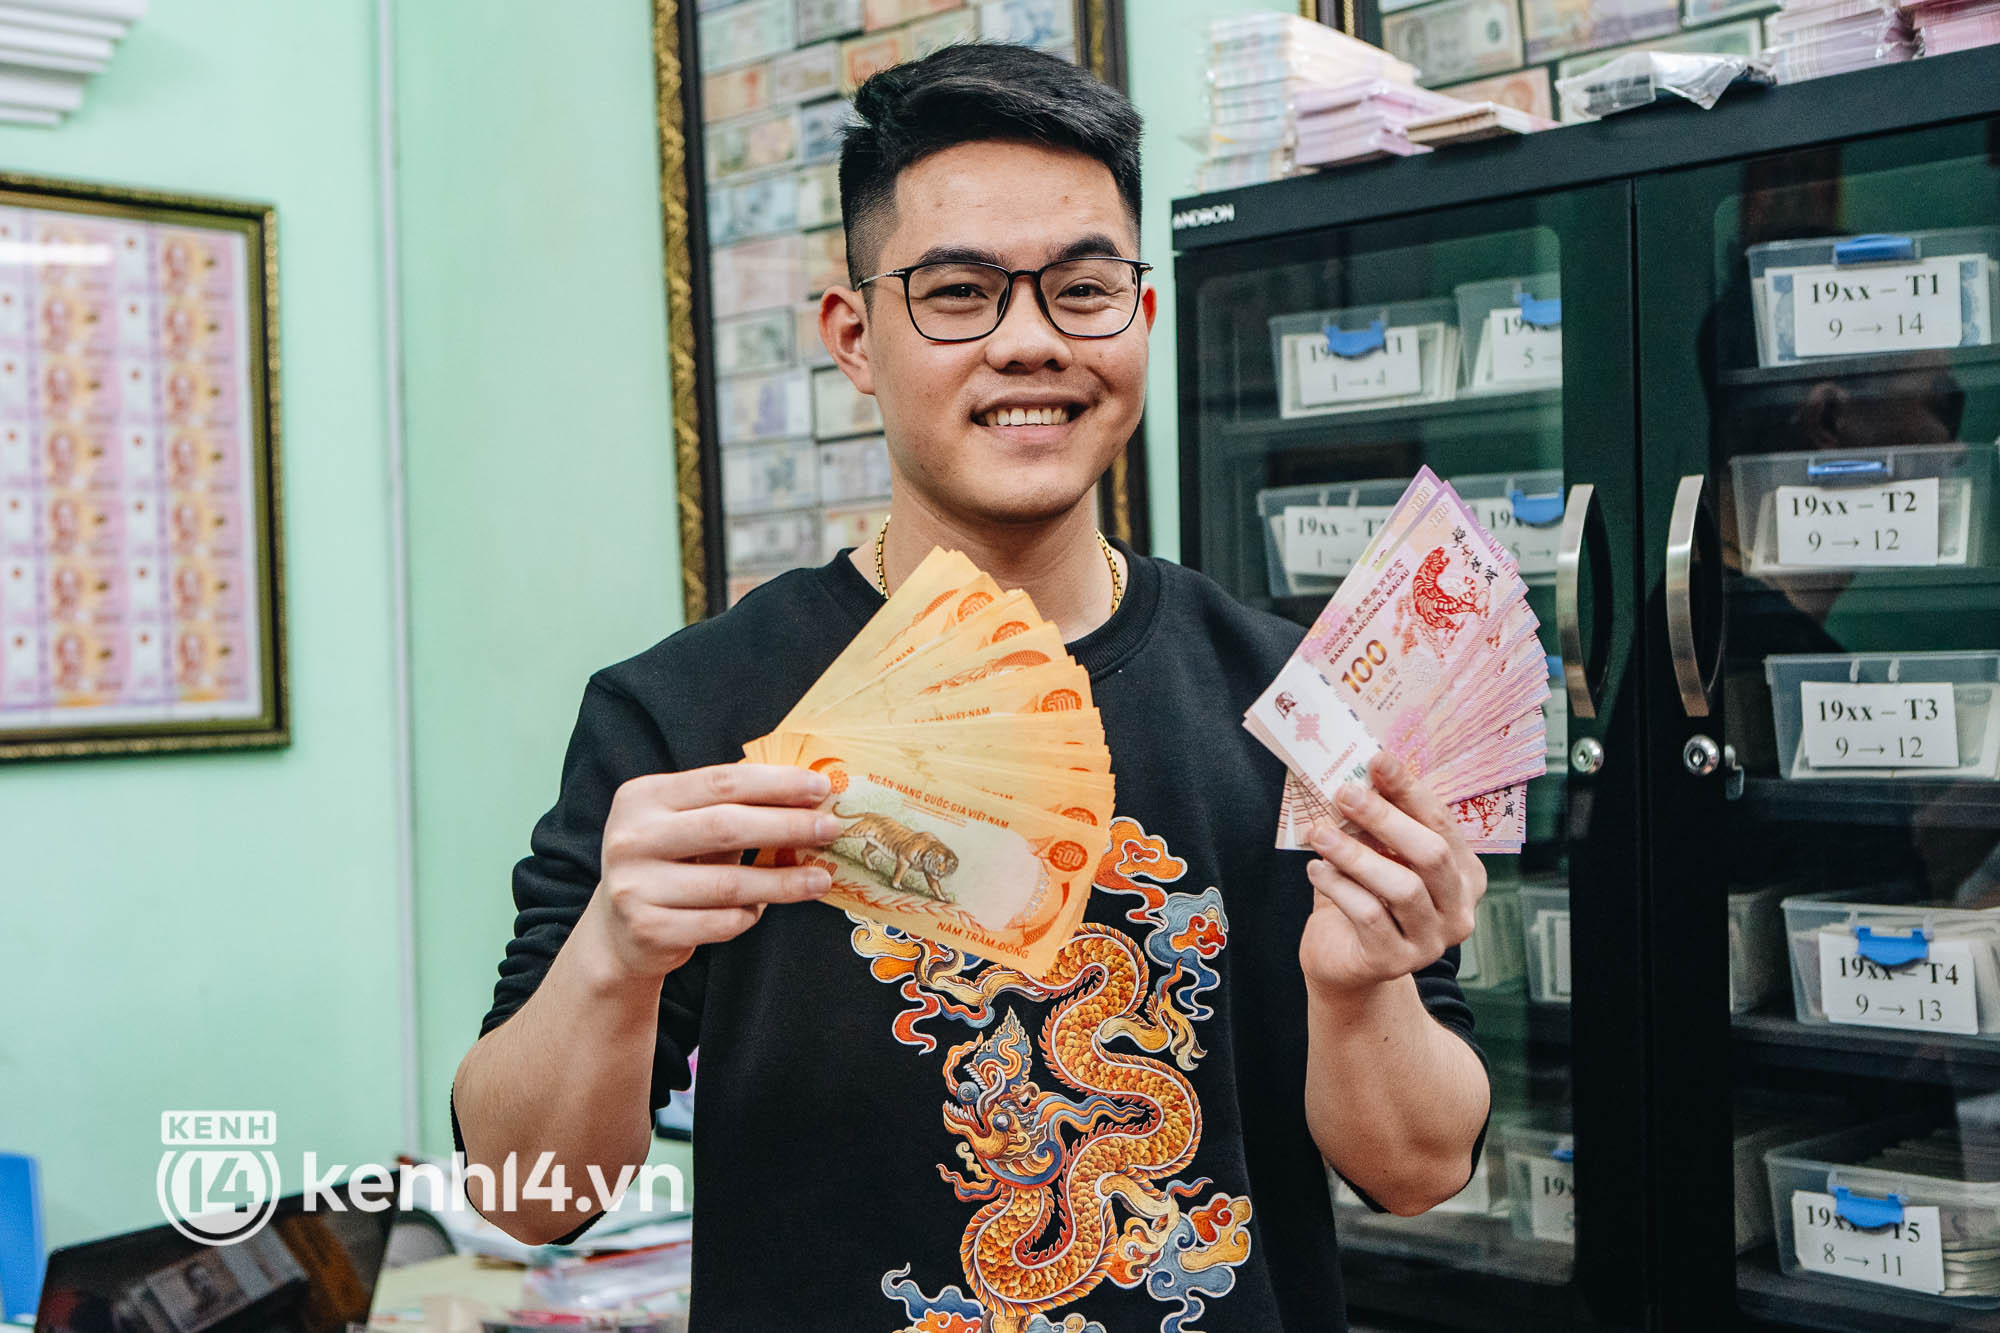 Đầu năm gặp Vua tiền tệ nổi tiếng TikTok, nghe kể về những tờ tiền in hình hổ độc nhất vô nhị và bộ sưu tập đạt kỷ lục Việt Nam - Ảnh 2.